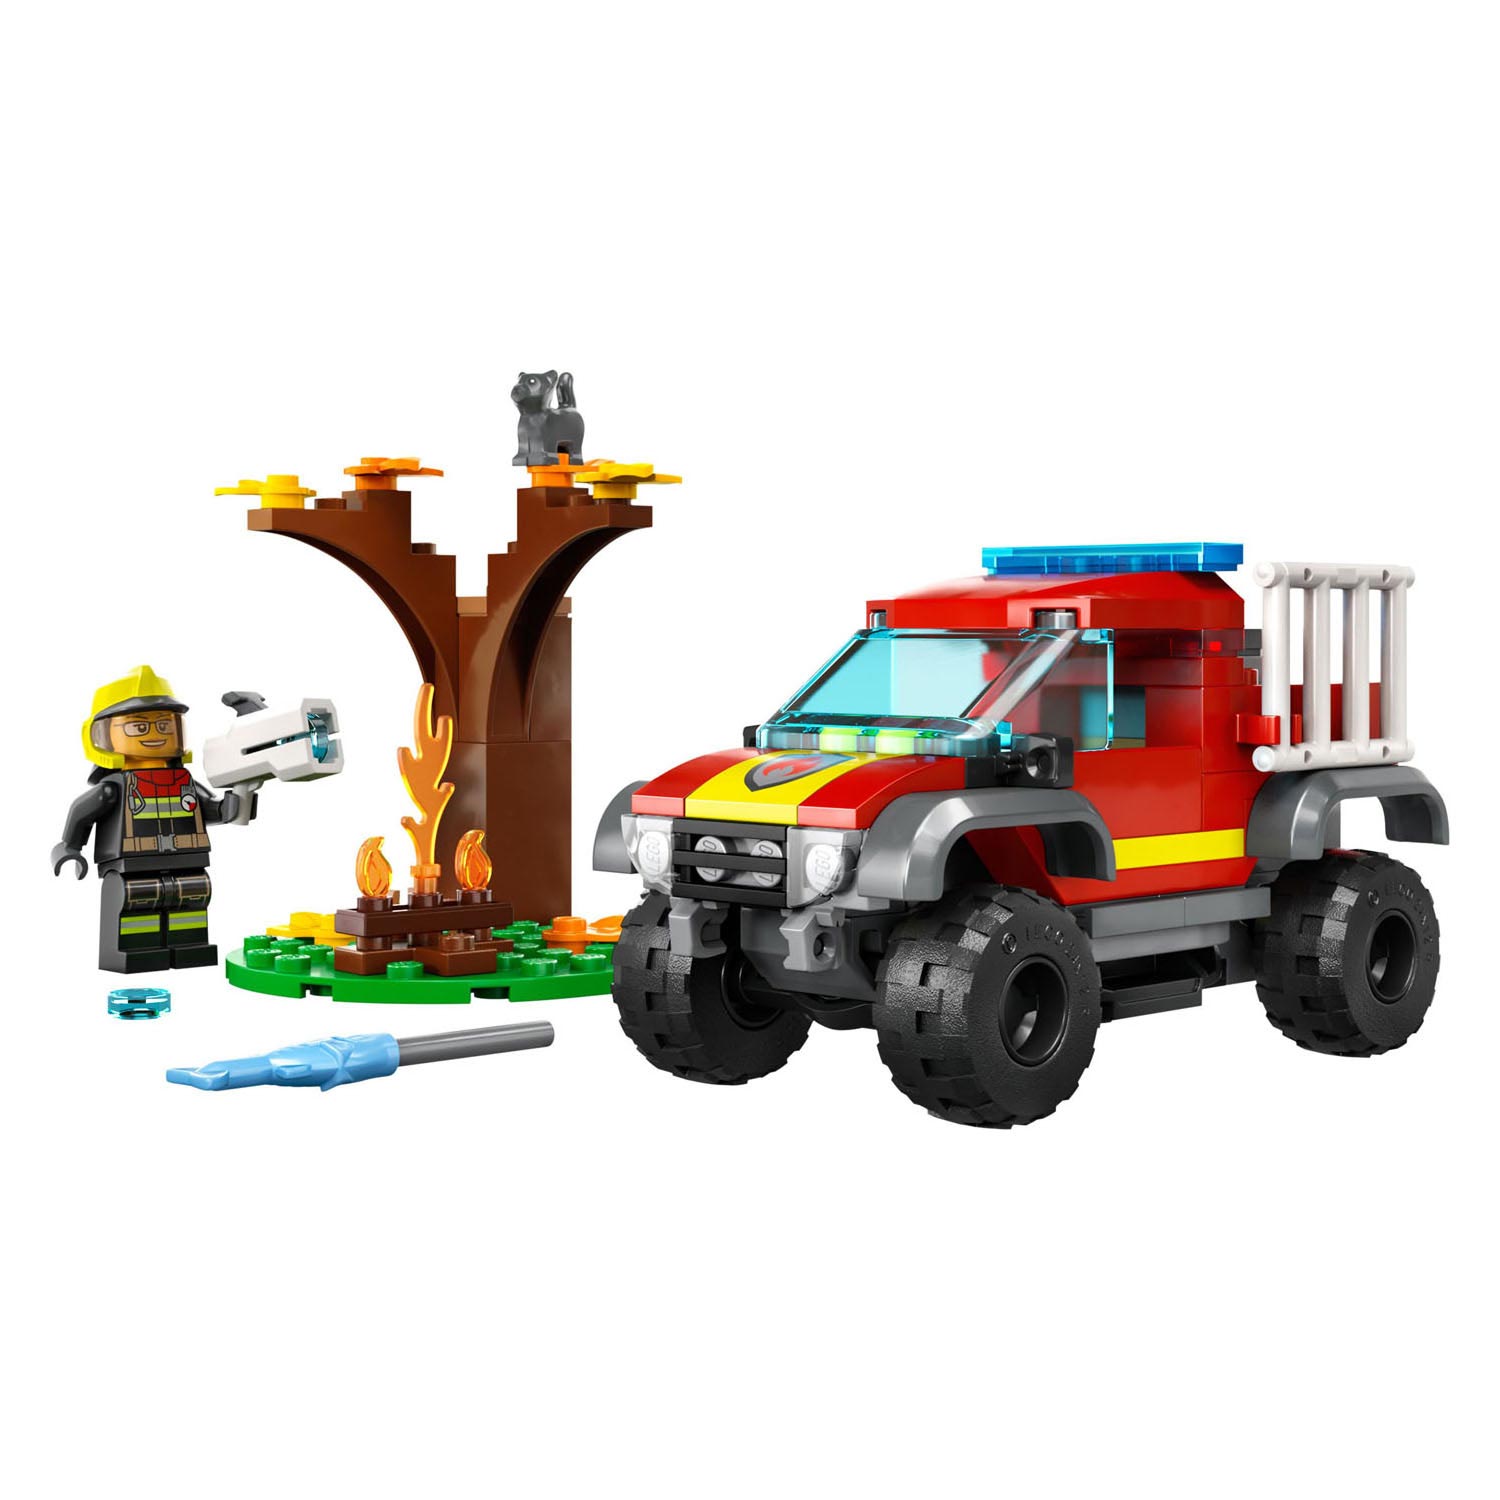 LEGO City 60393 Rettung mit einem 4x4-Feuerwehrauto